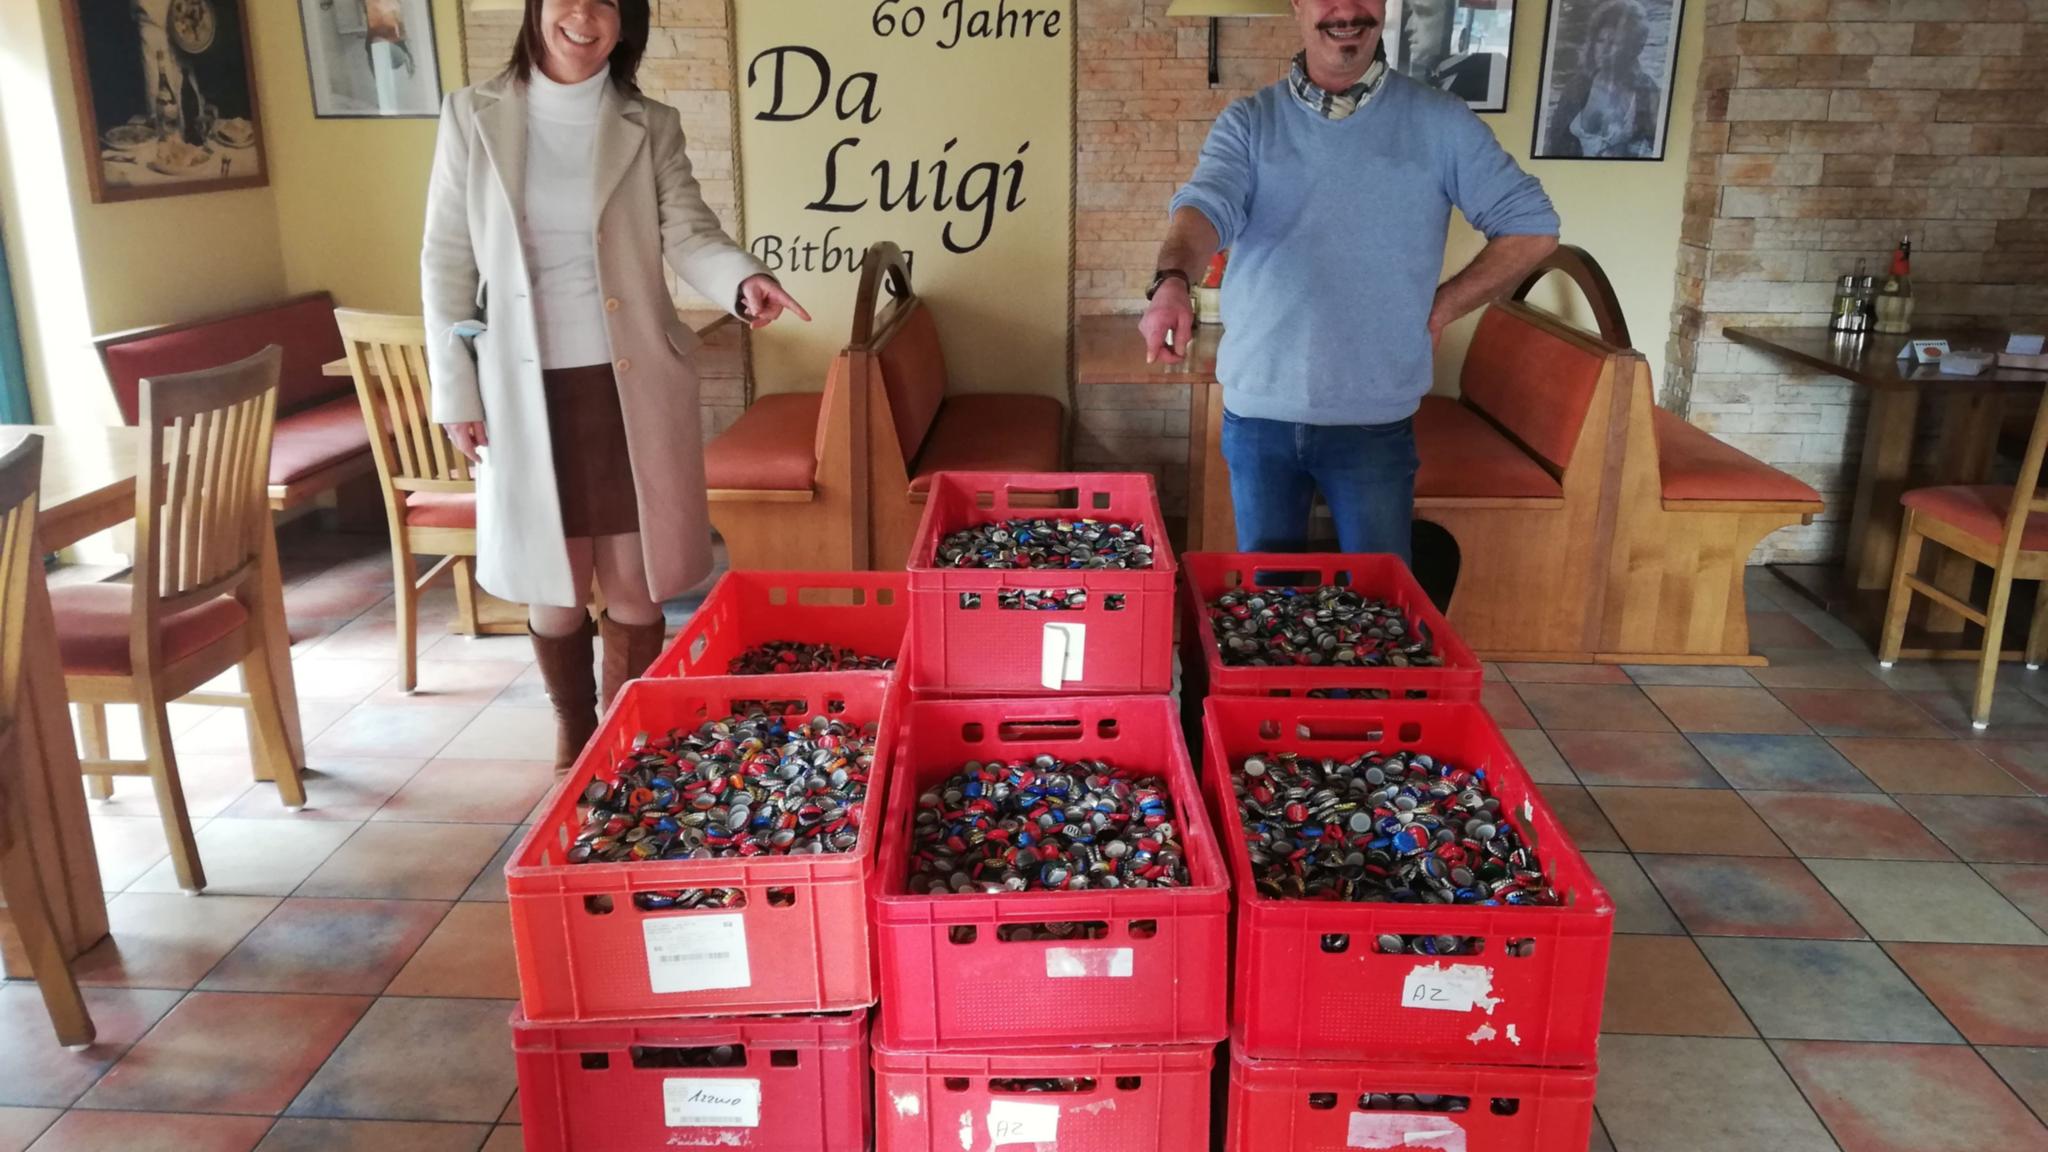 Rocco Silipigni übergibt 120 Kilogramm Kronkorken an Isabel Eckfelder. Foto: Torsten Hauer